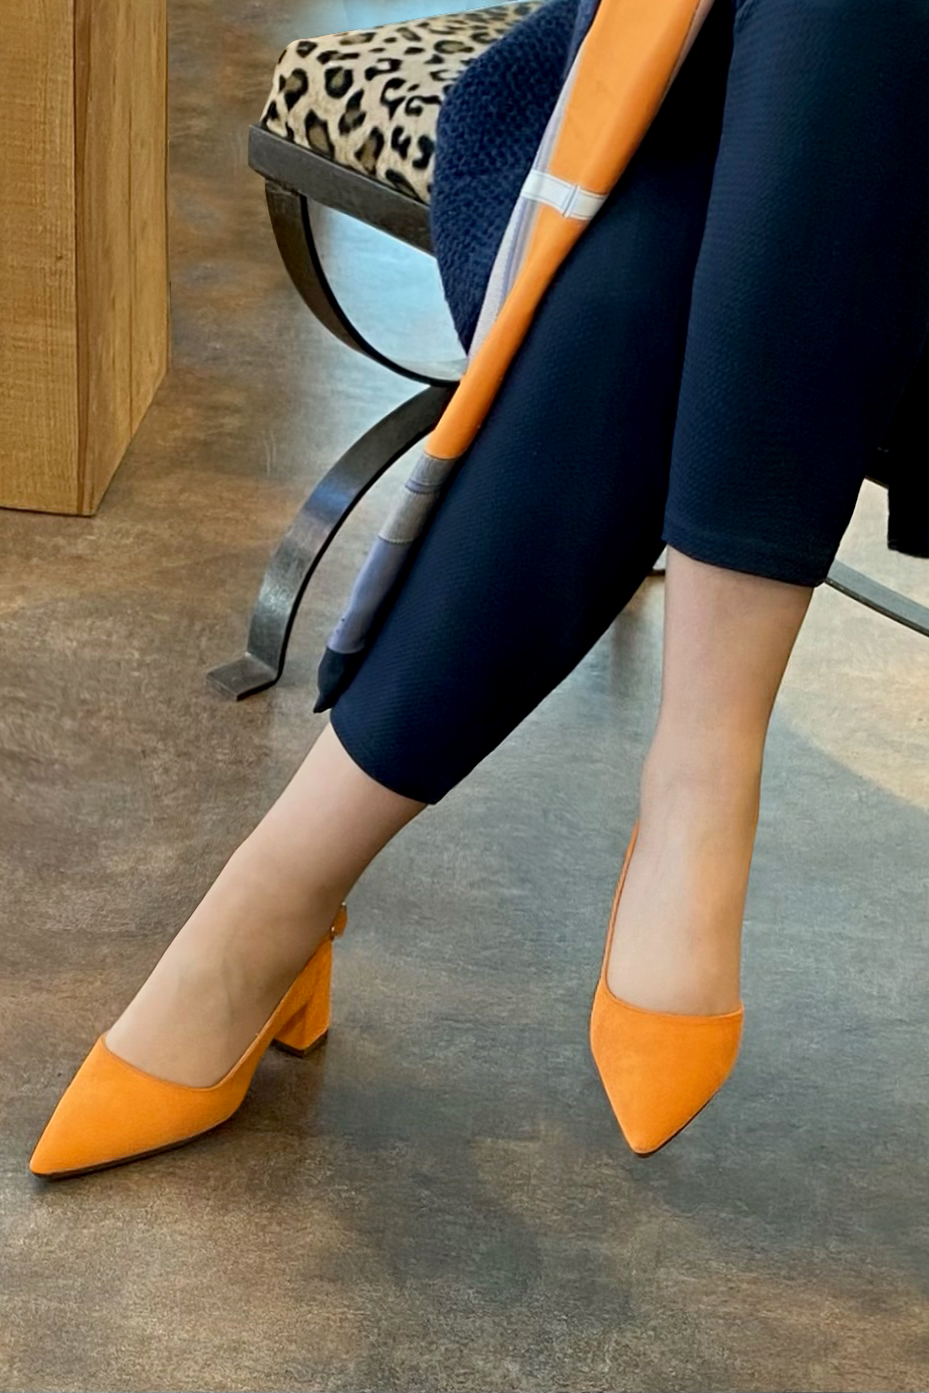 Chaussure femme à brides :  couleur orange abricot. Bout pointu. Talon mi-haut évasé. Vue porté - Florence KOOIJMAN